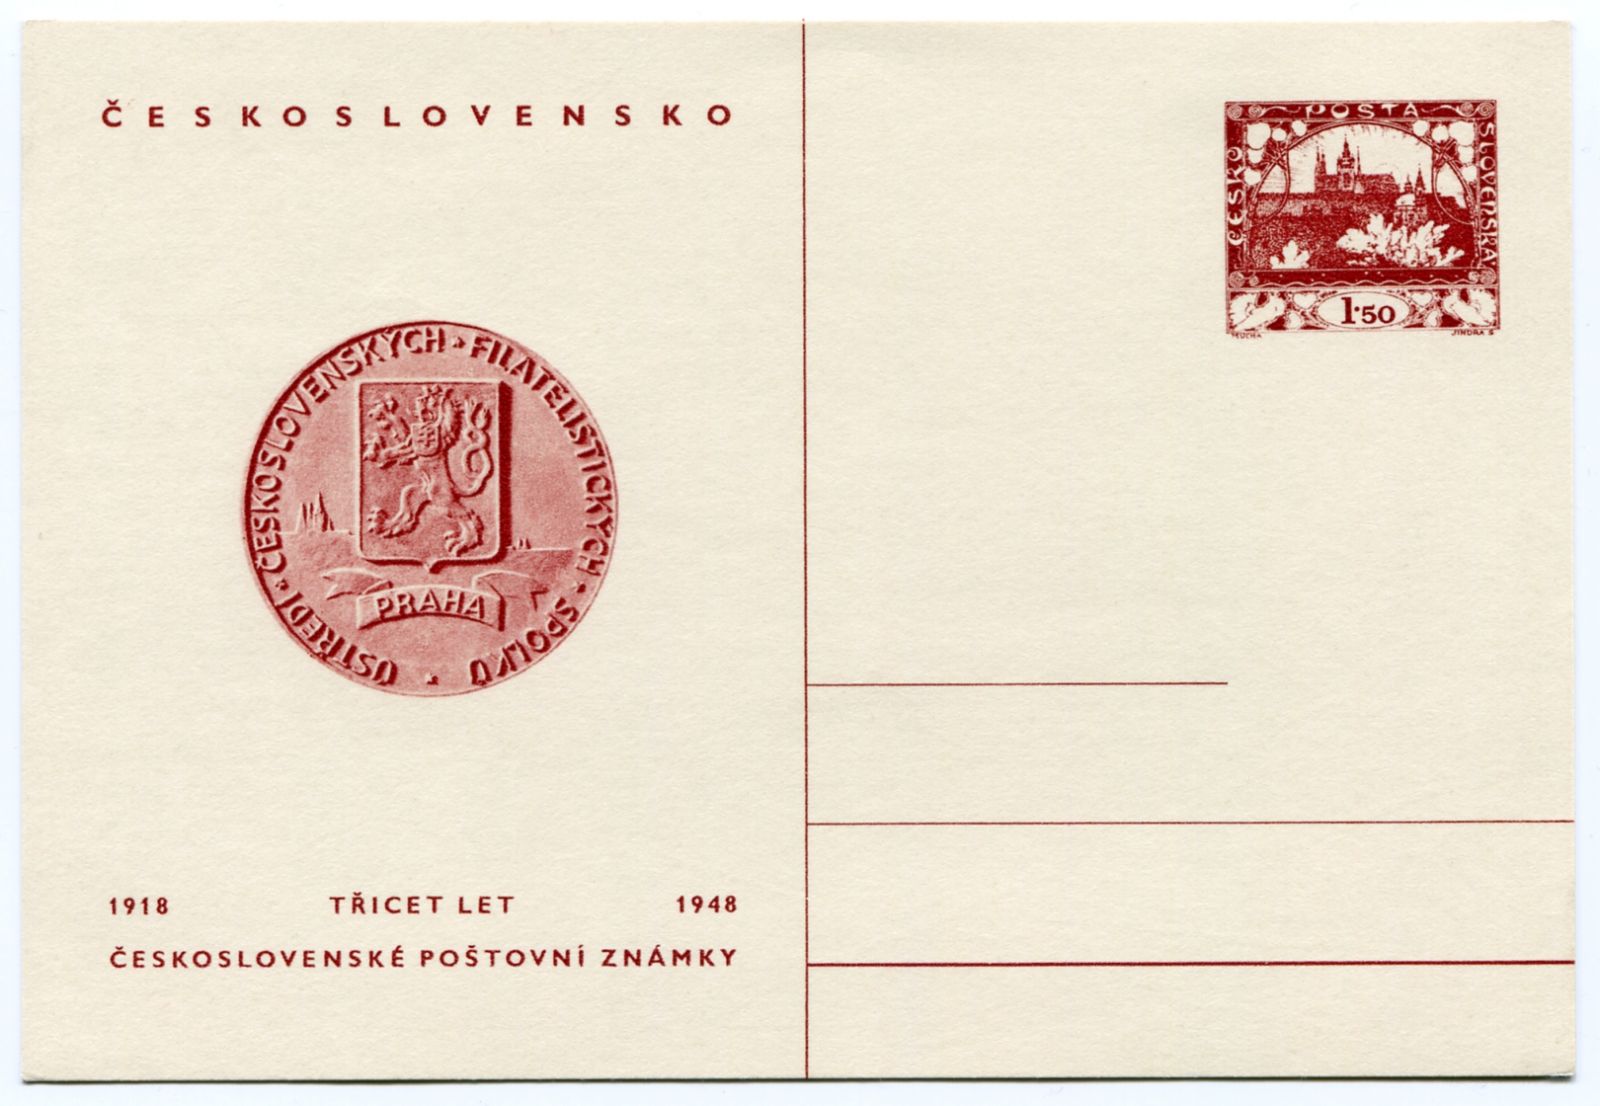 (1948) CDV 95 ** - 30 let československé poštovní známky